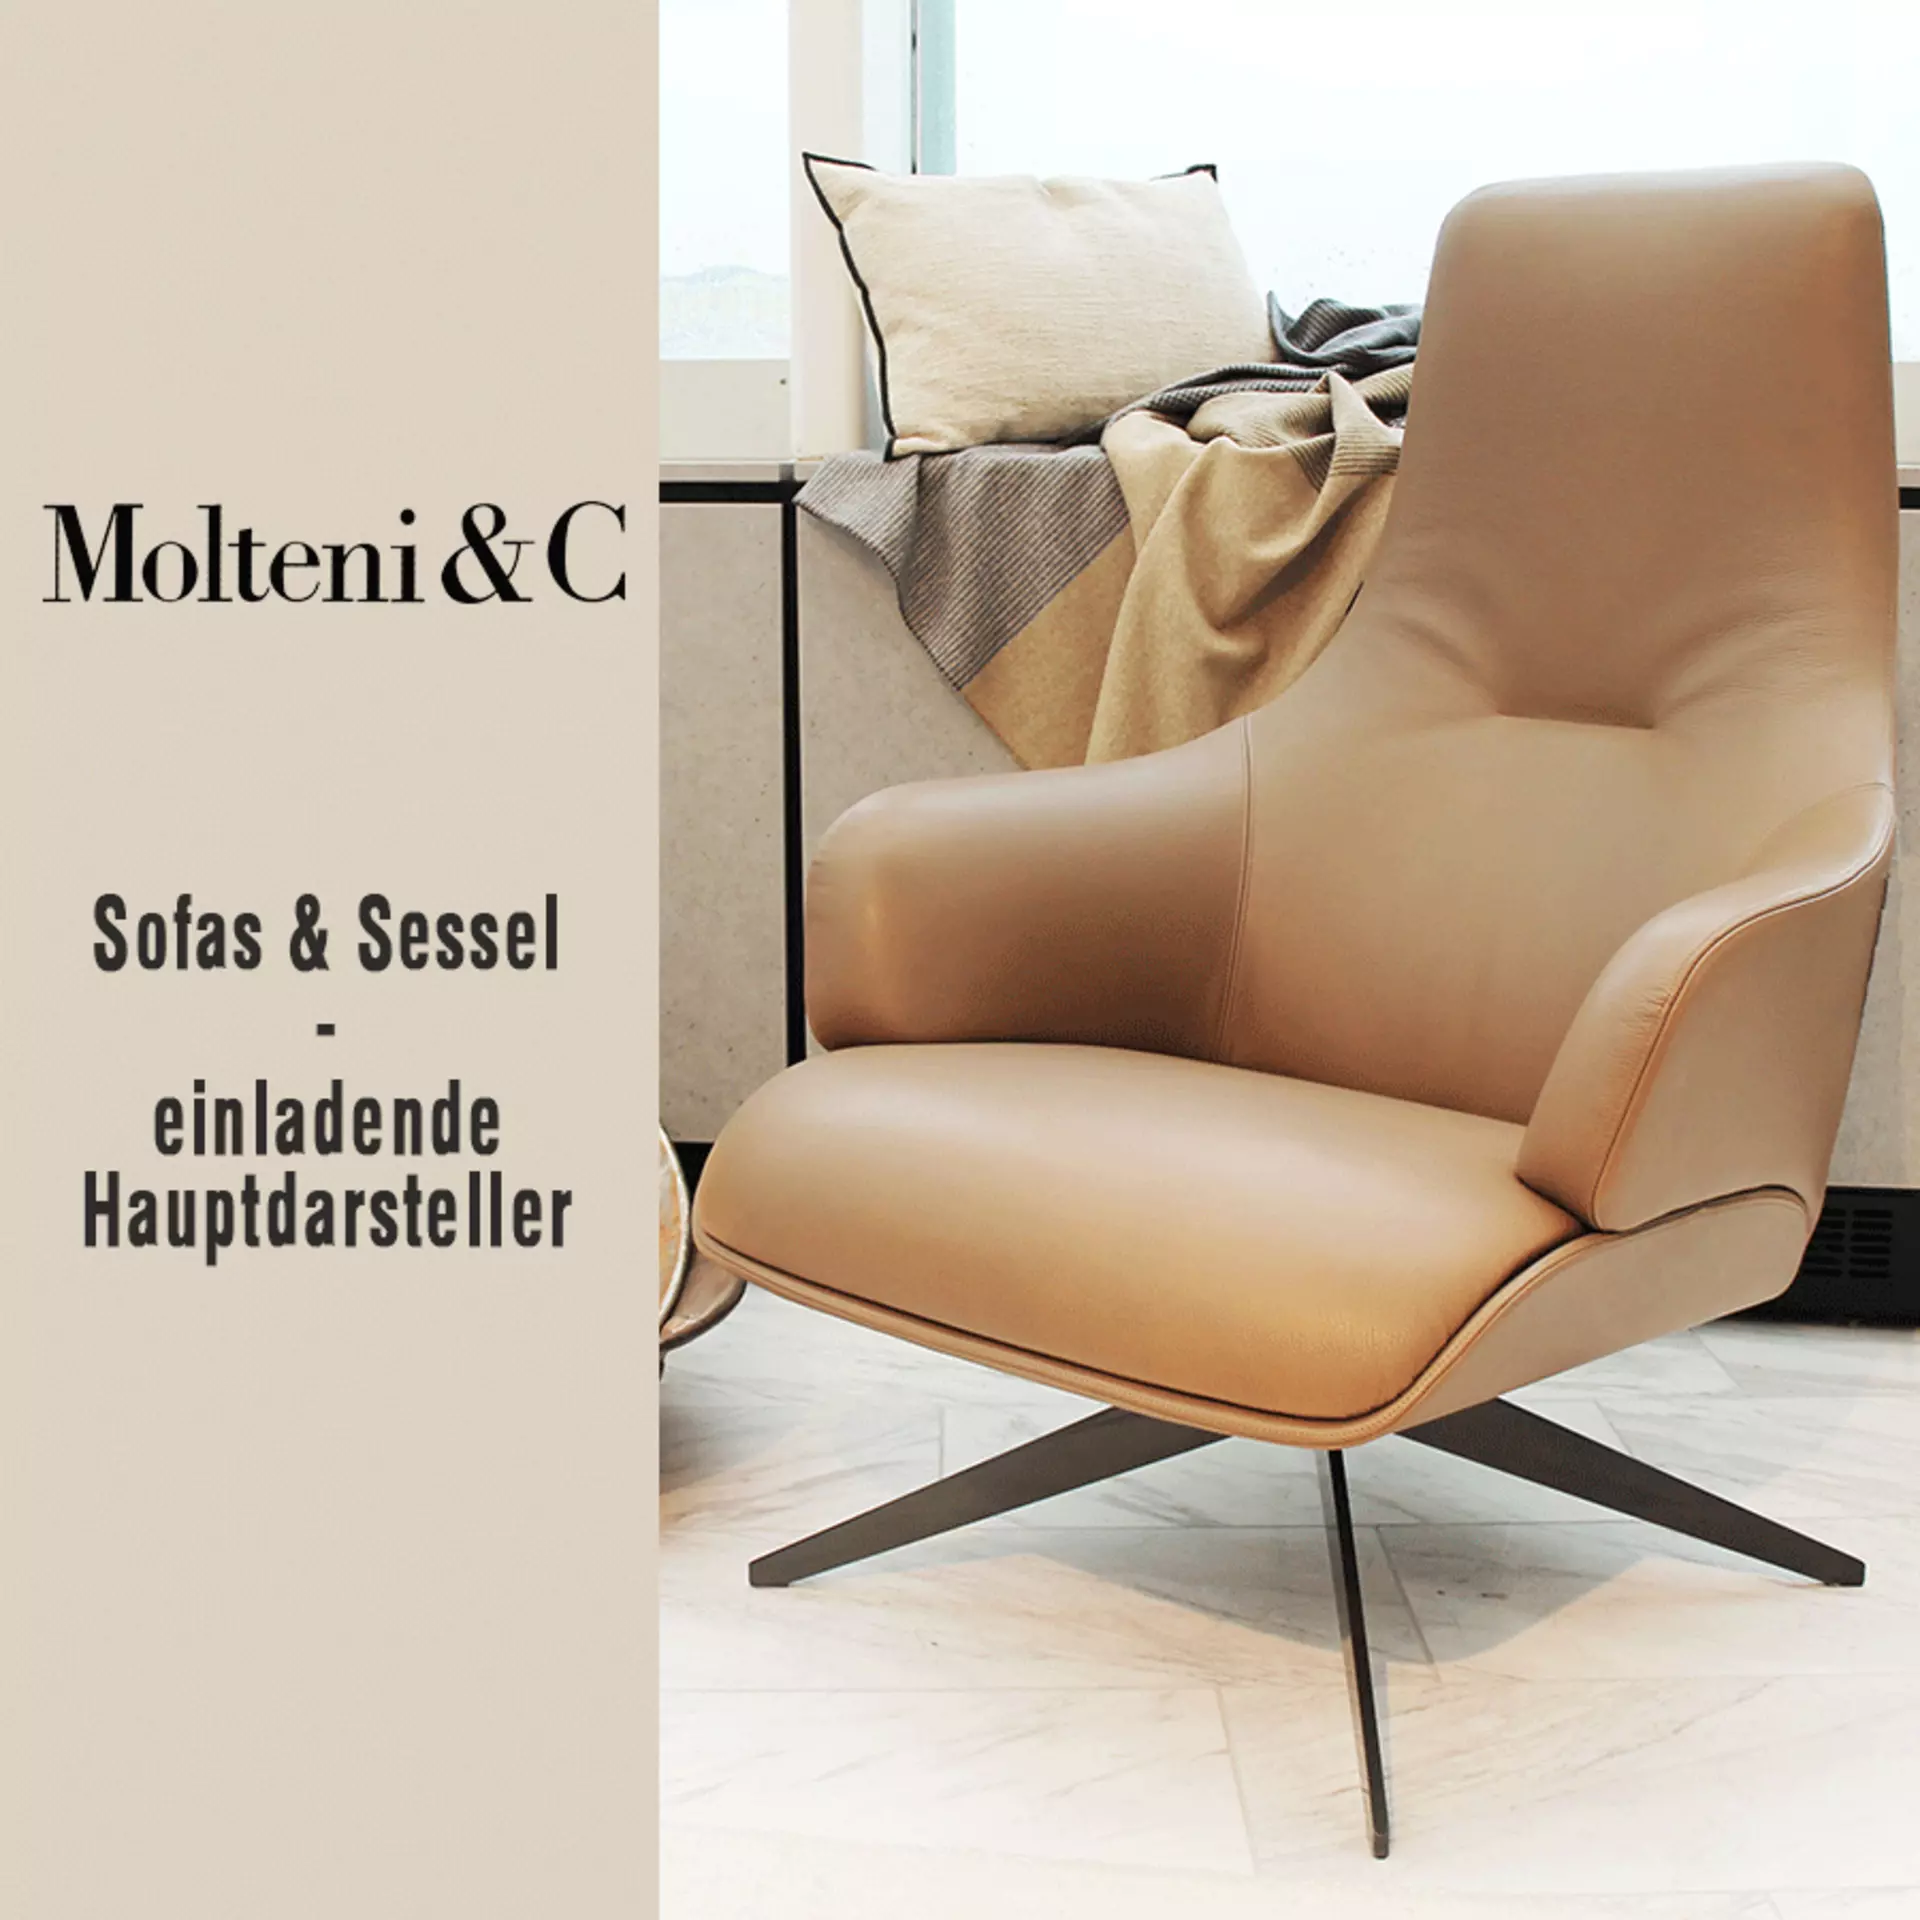 Sessel und Sofas von Molteni&C bei interni by Inhofer - jetzt 15% Rabattaktion entdecken